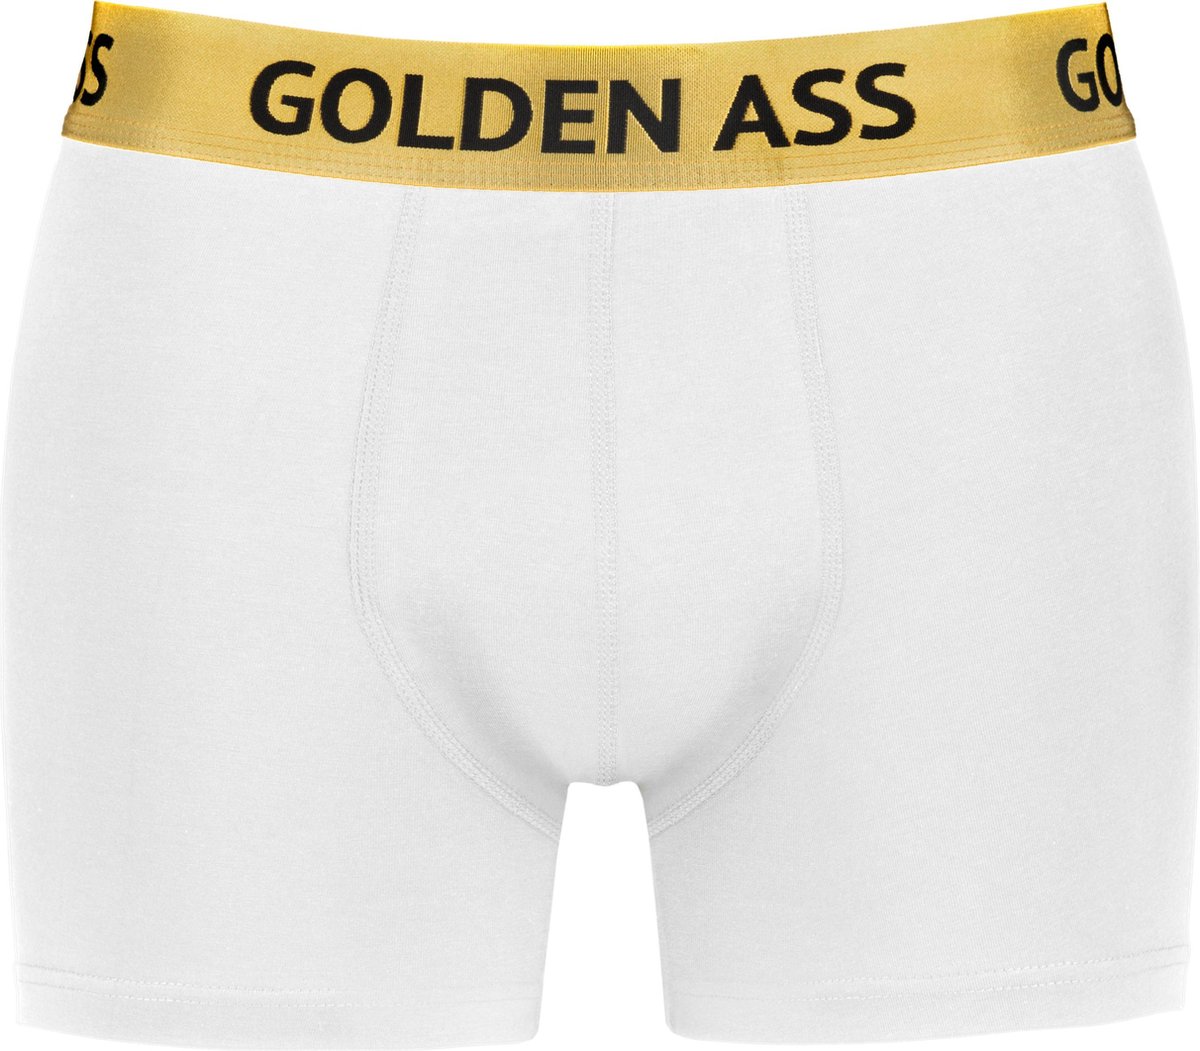 Golden Ass - Heren boxershort wit XS